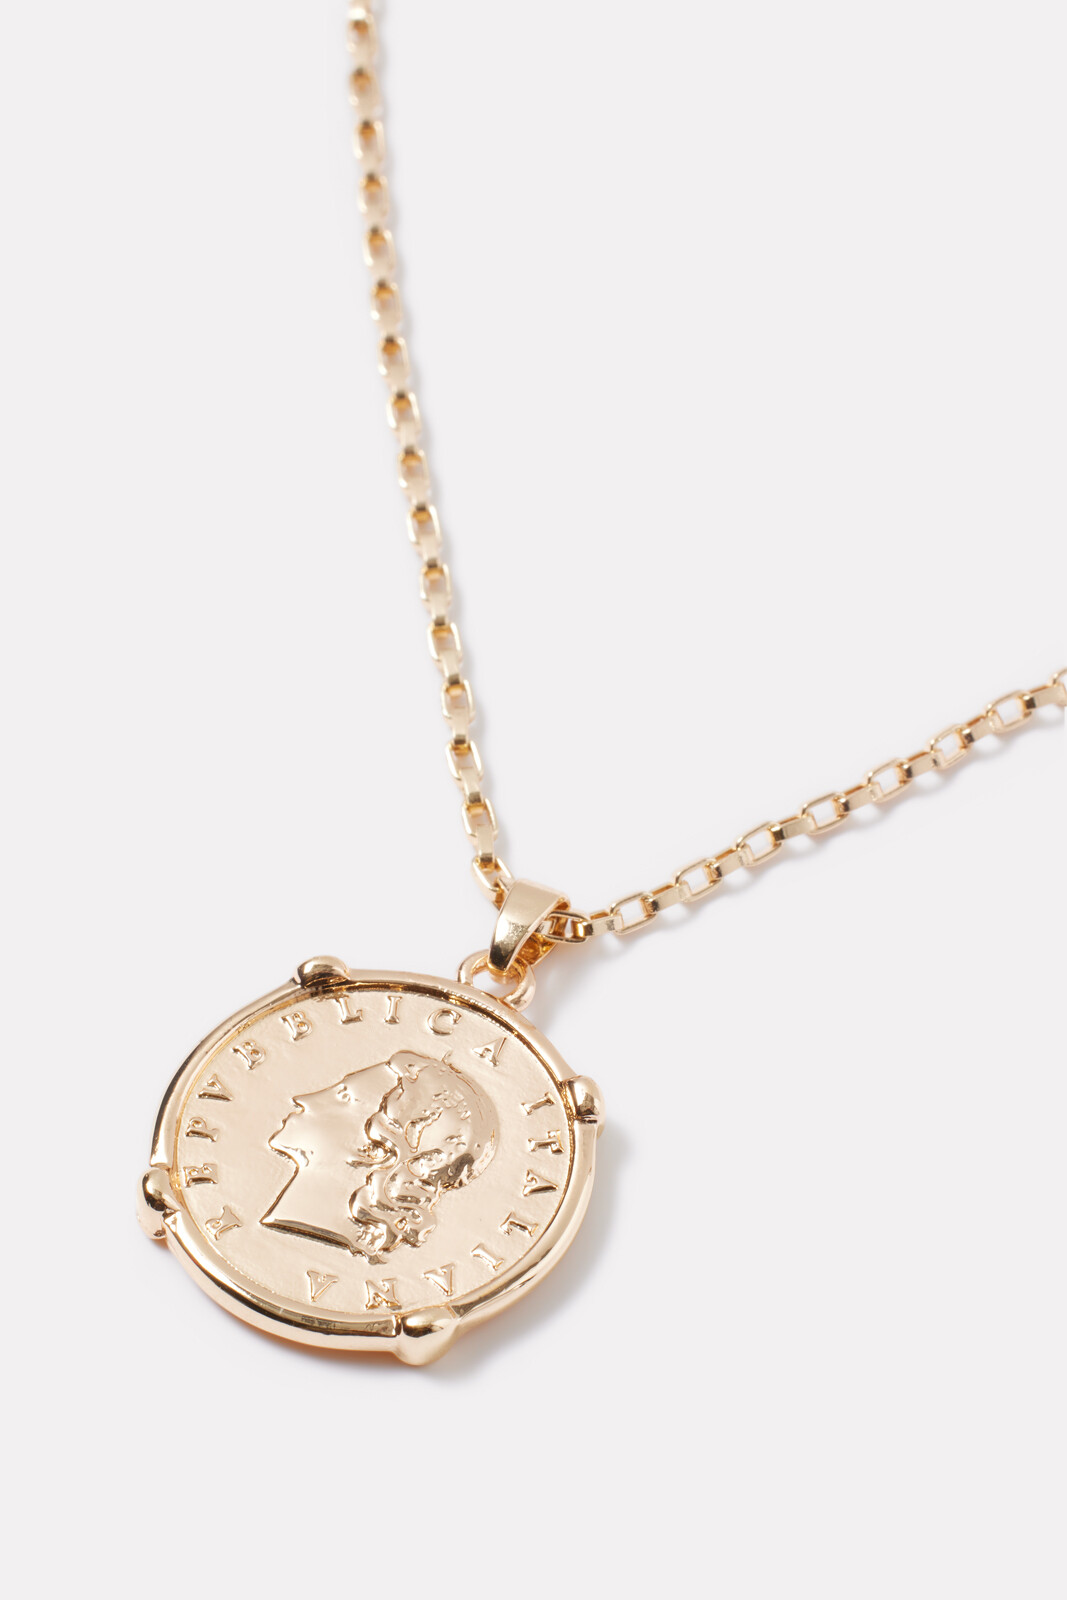 Carlton Coin Necklace